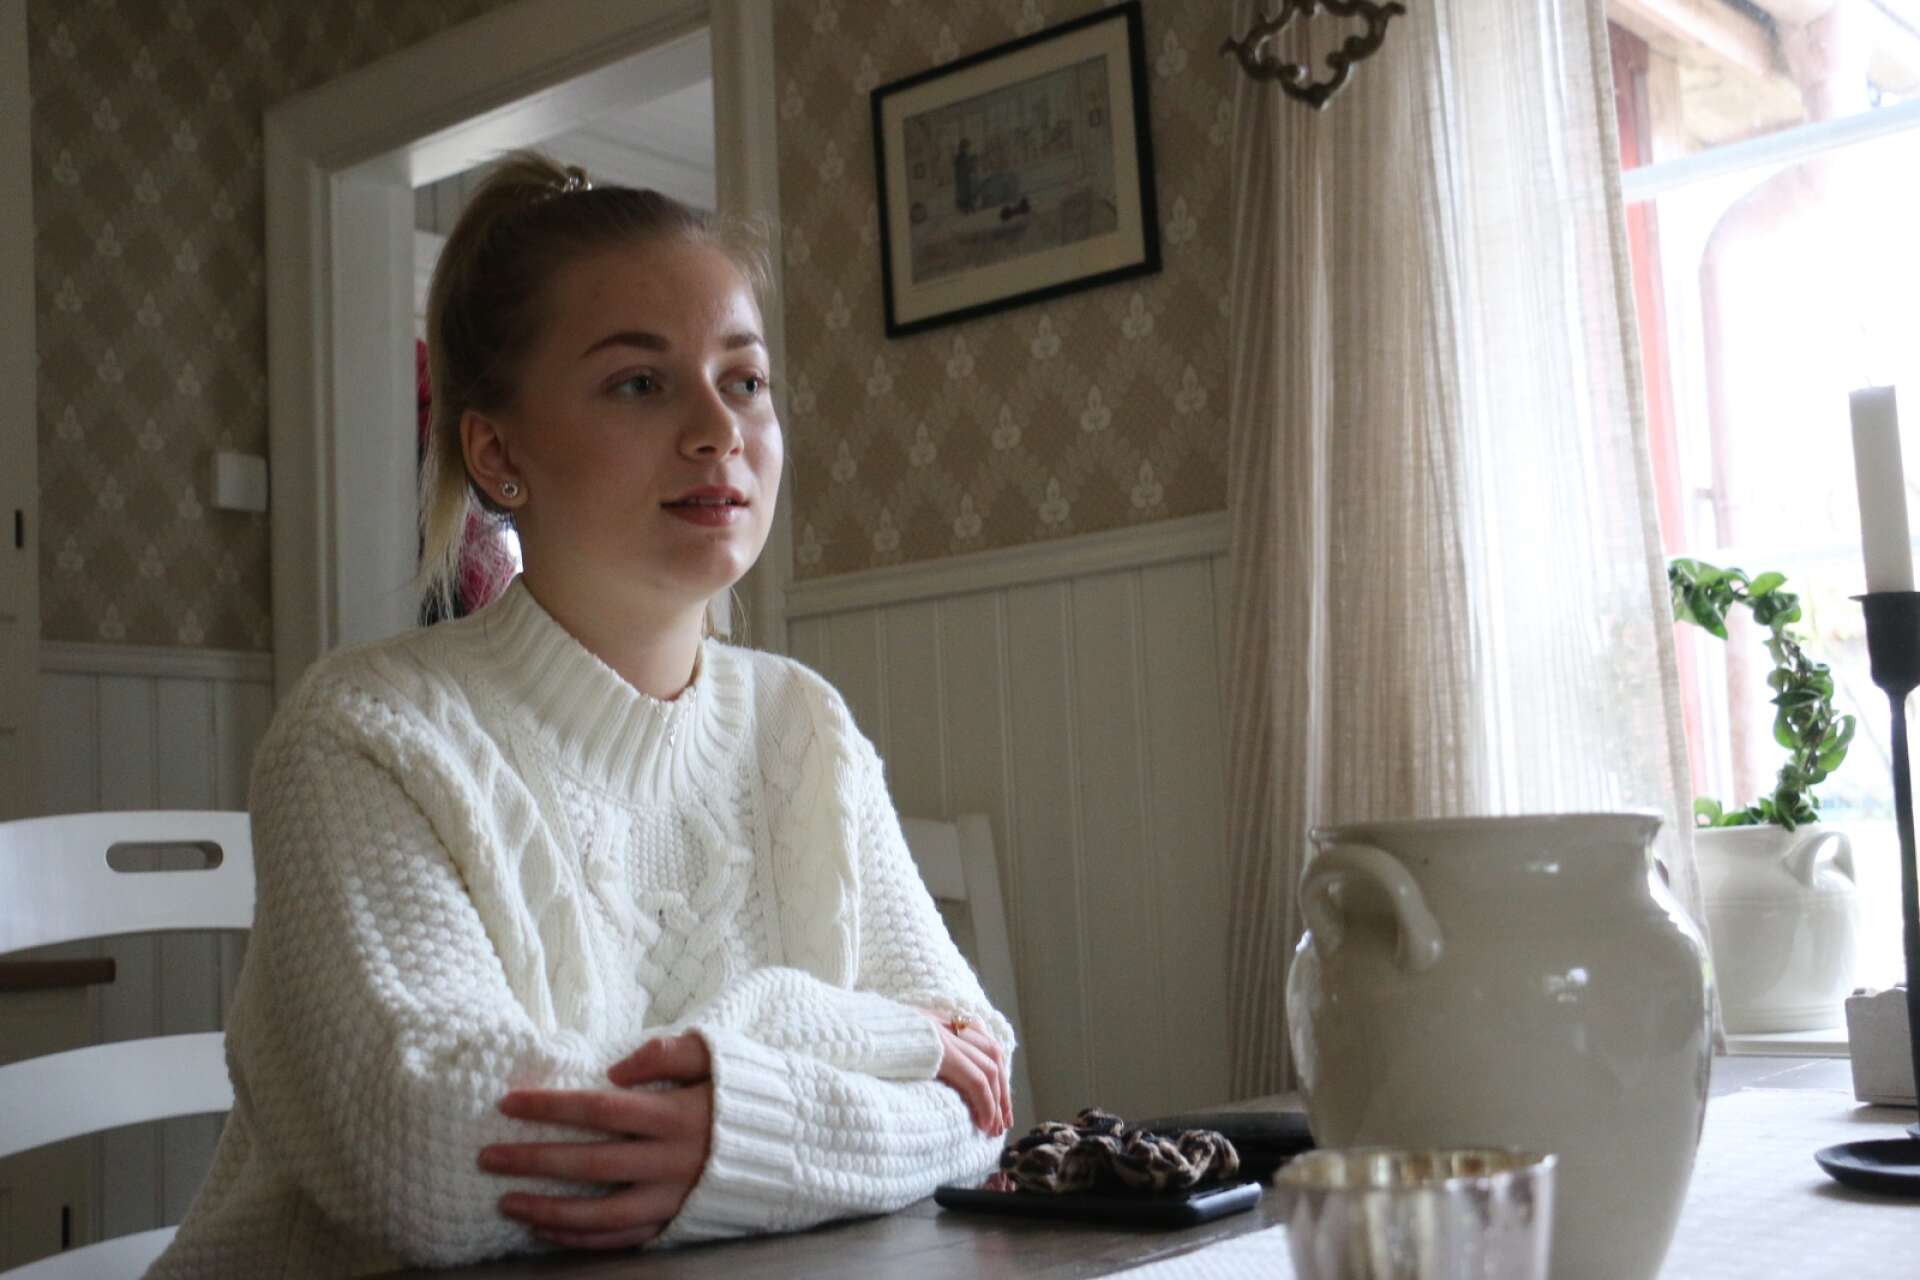 Maja Eriksson har blivit mobbad under stora delar av sin tid i grundskolan.Hon berättar om stödet hon fått men även den avundsjuka och ryktesspridning som uppstått.